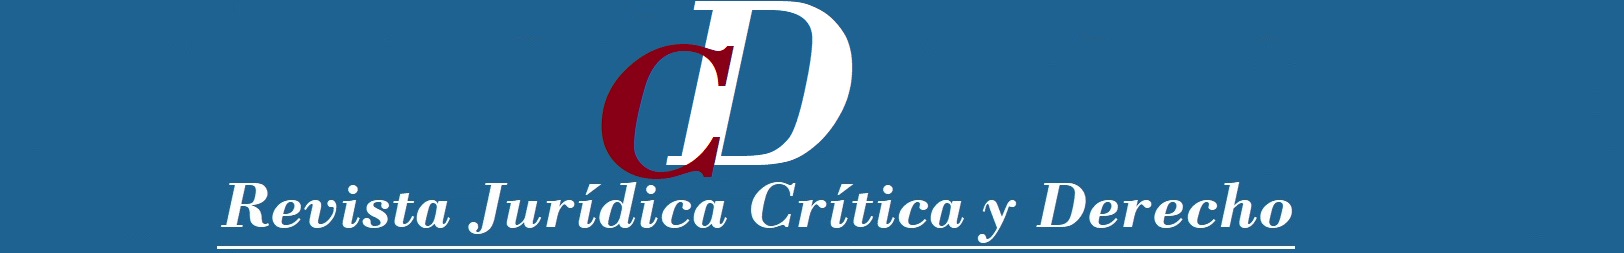 Revista Jurídica Crítica y Derecho